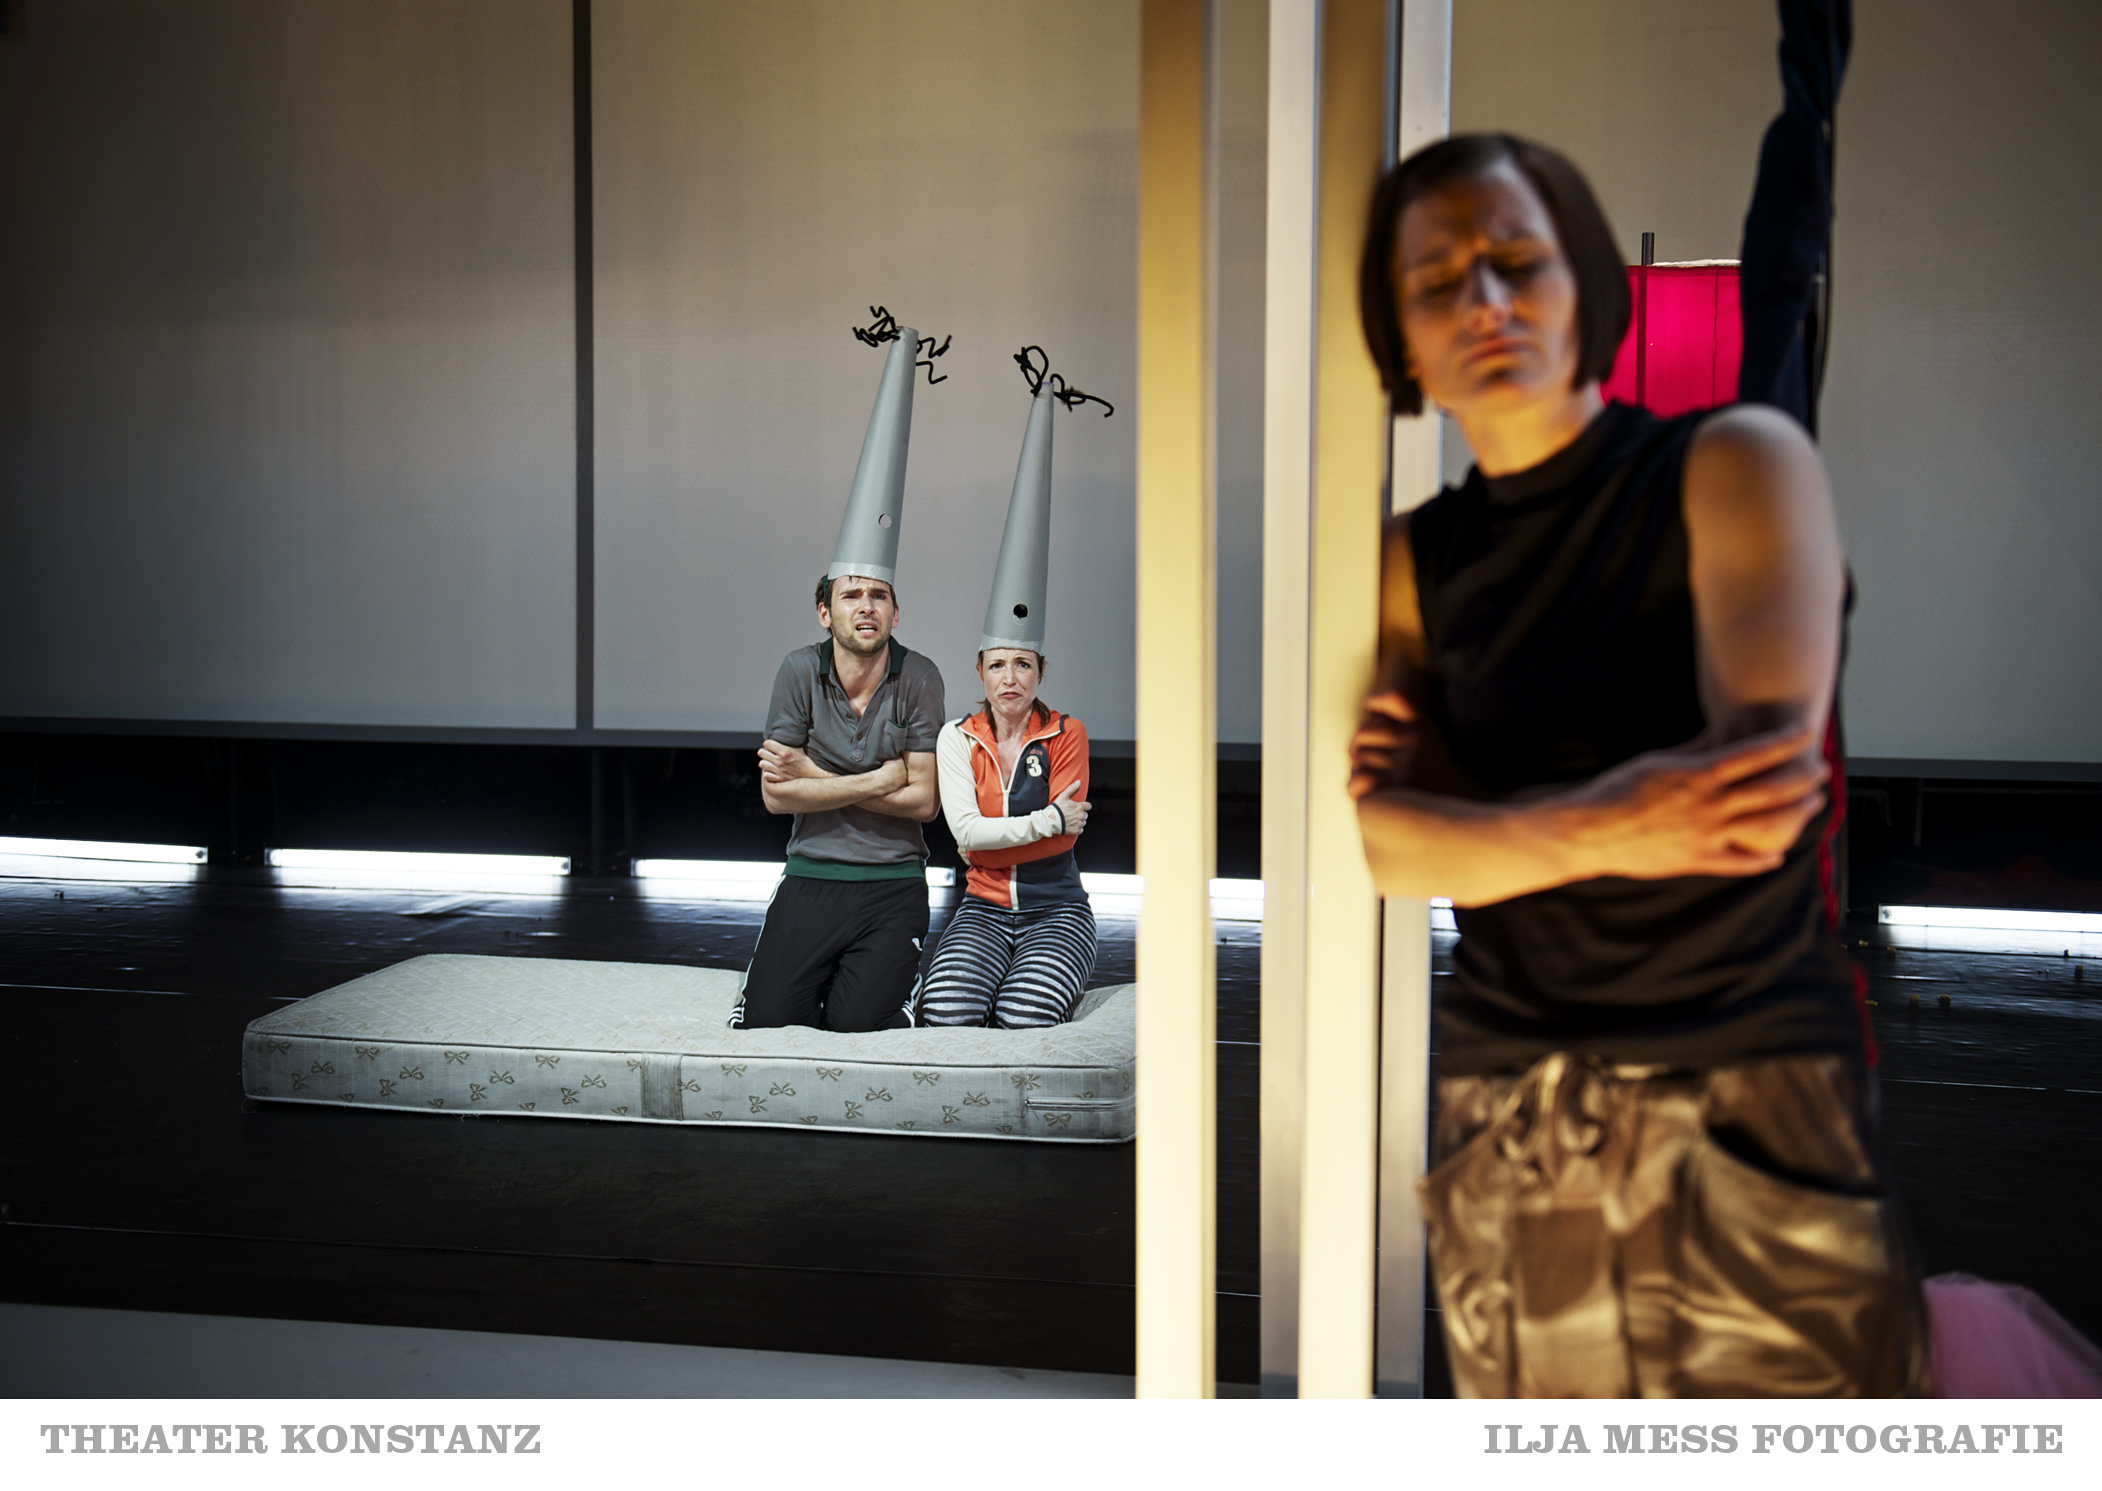 "EInsam lehnen am Bekannten" in einer Neuauflage am Theater Konstanz